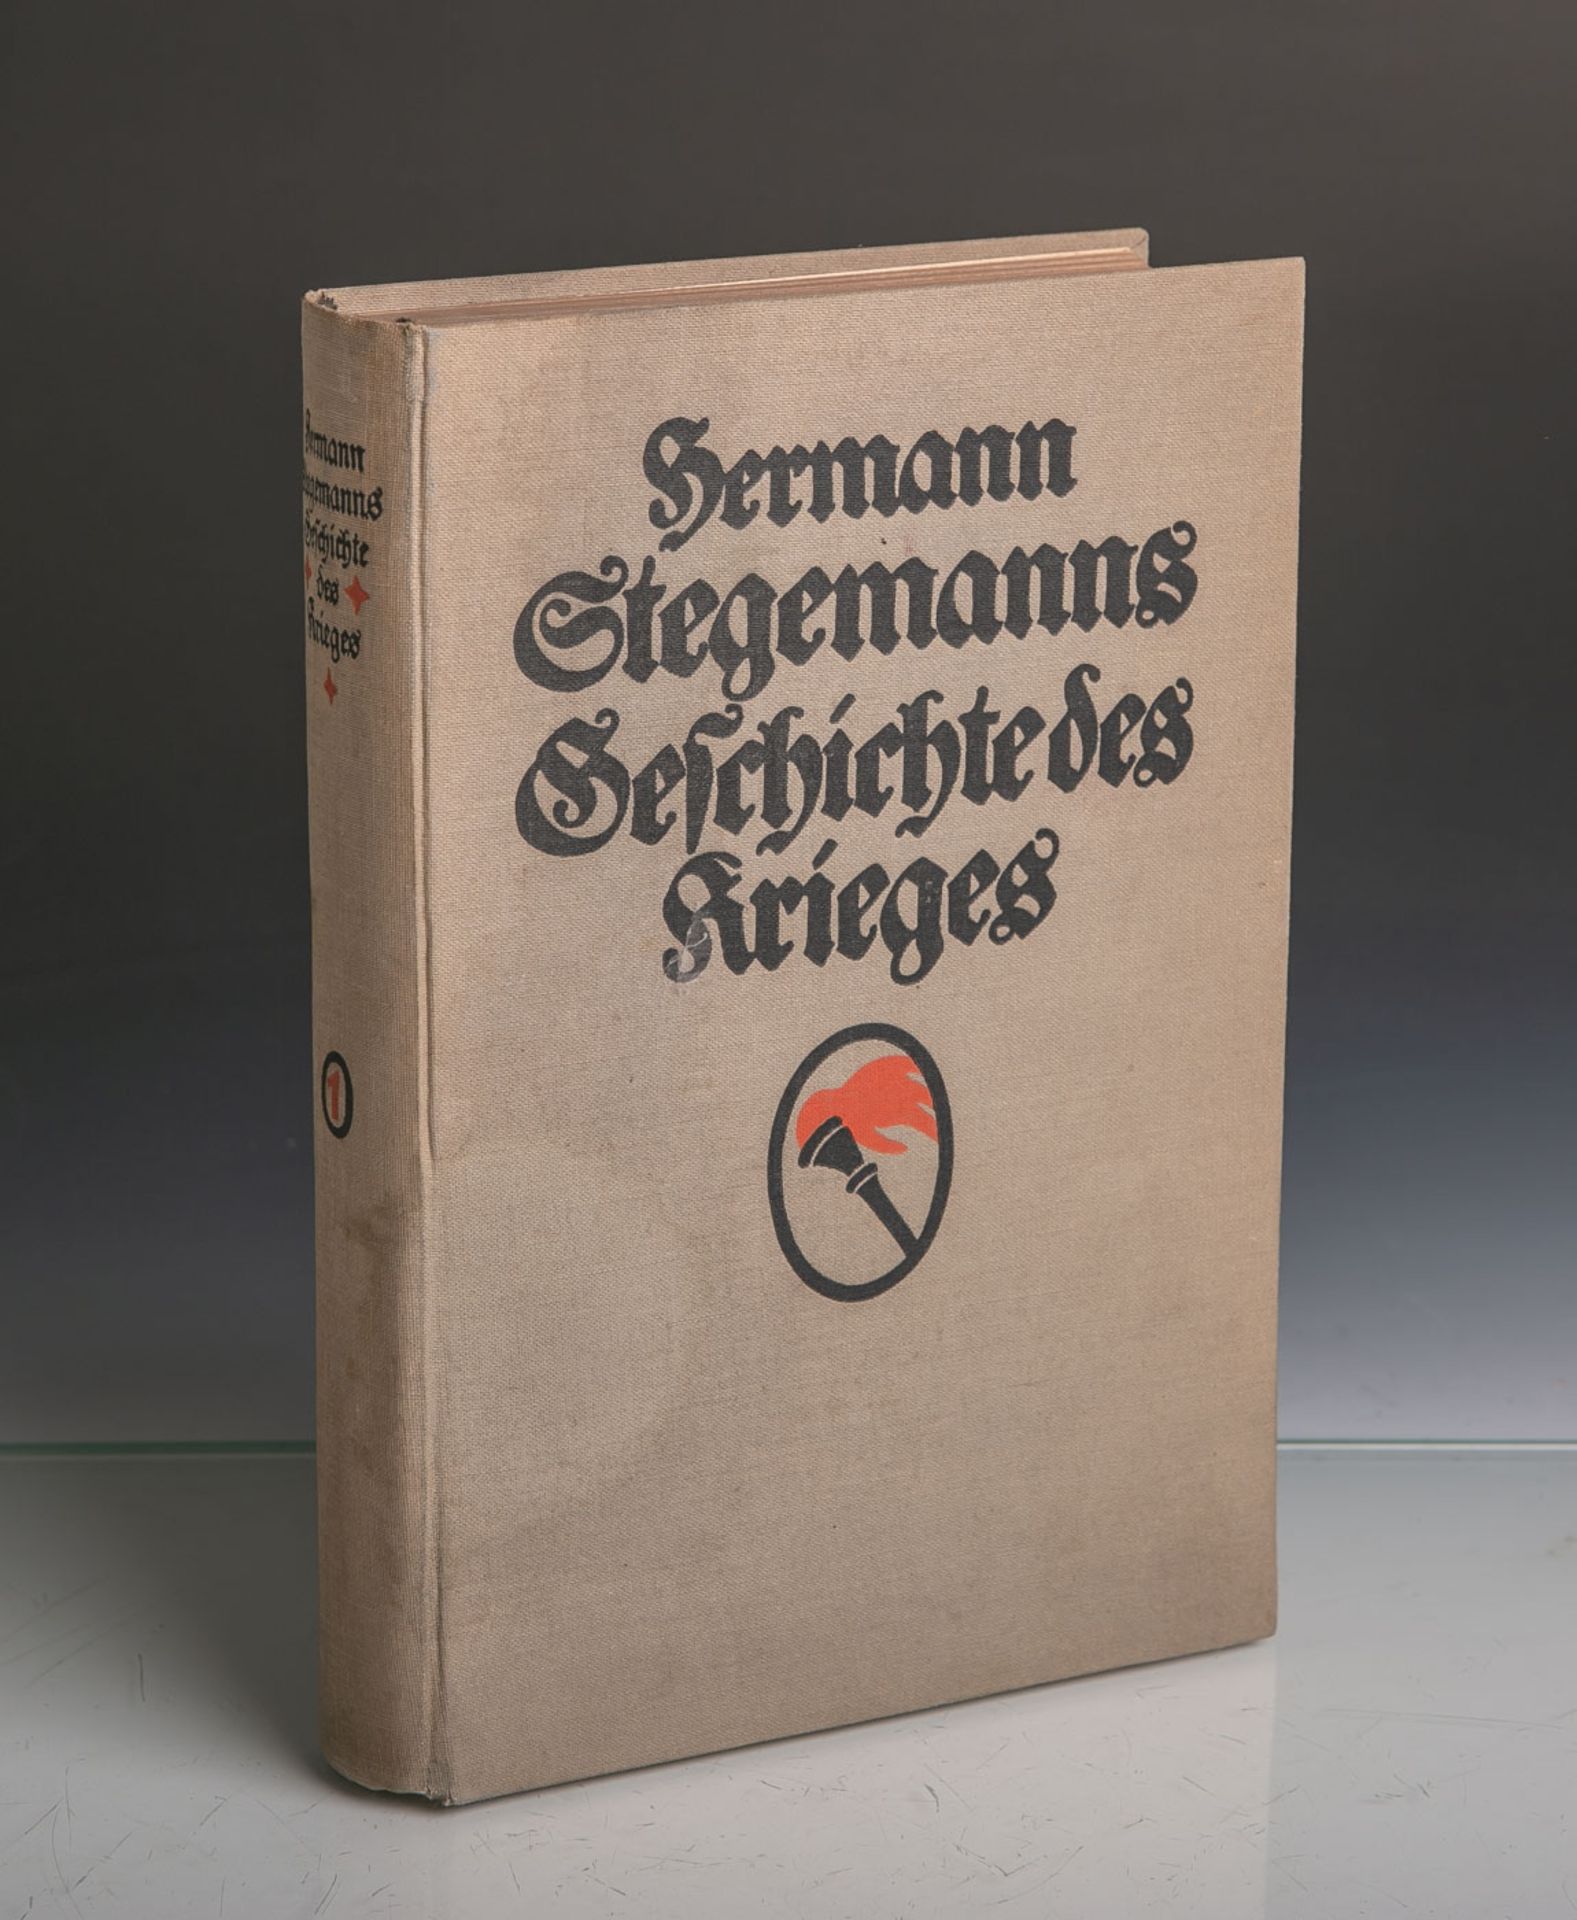 Stegemann, Hermann, "Geschichte des Krieges", 1. Band, Deutsche Verlagsanstalt Stuttgart